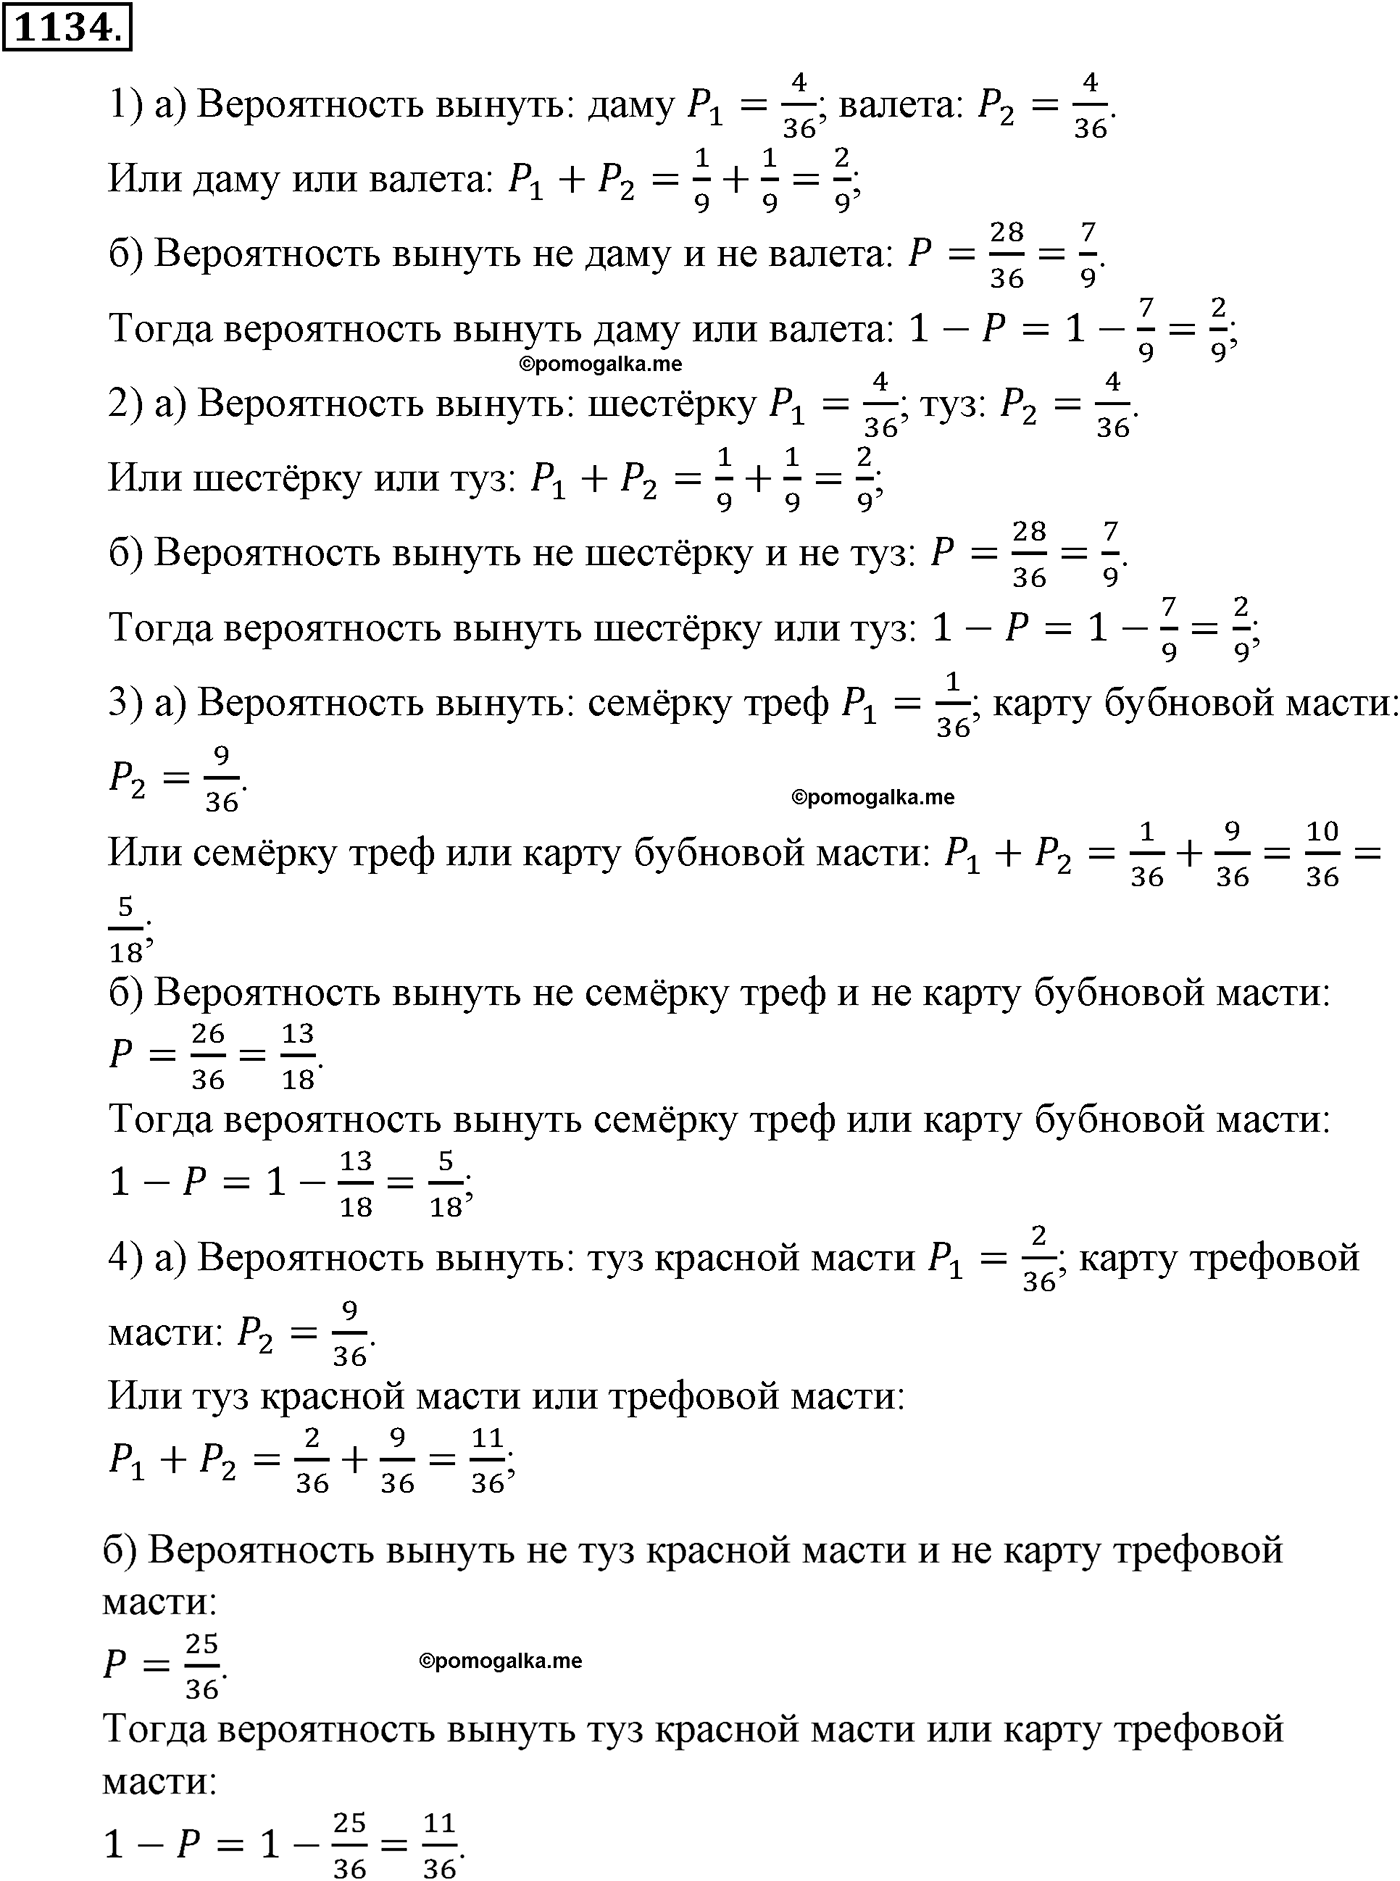 разбор задачи №1134 по алгебре за 10-11 класс из учебника Алимова, Колягина